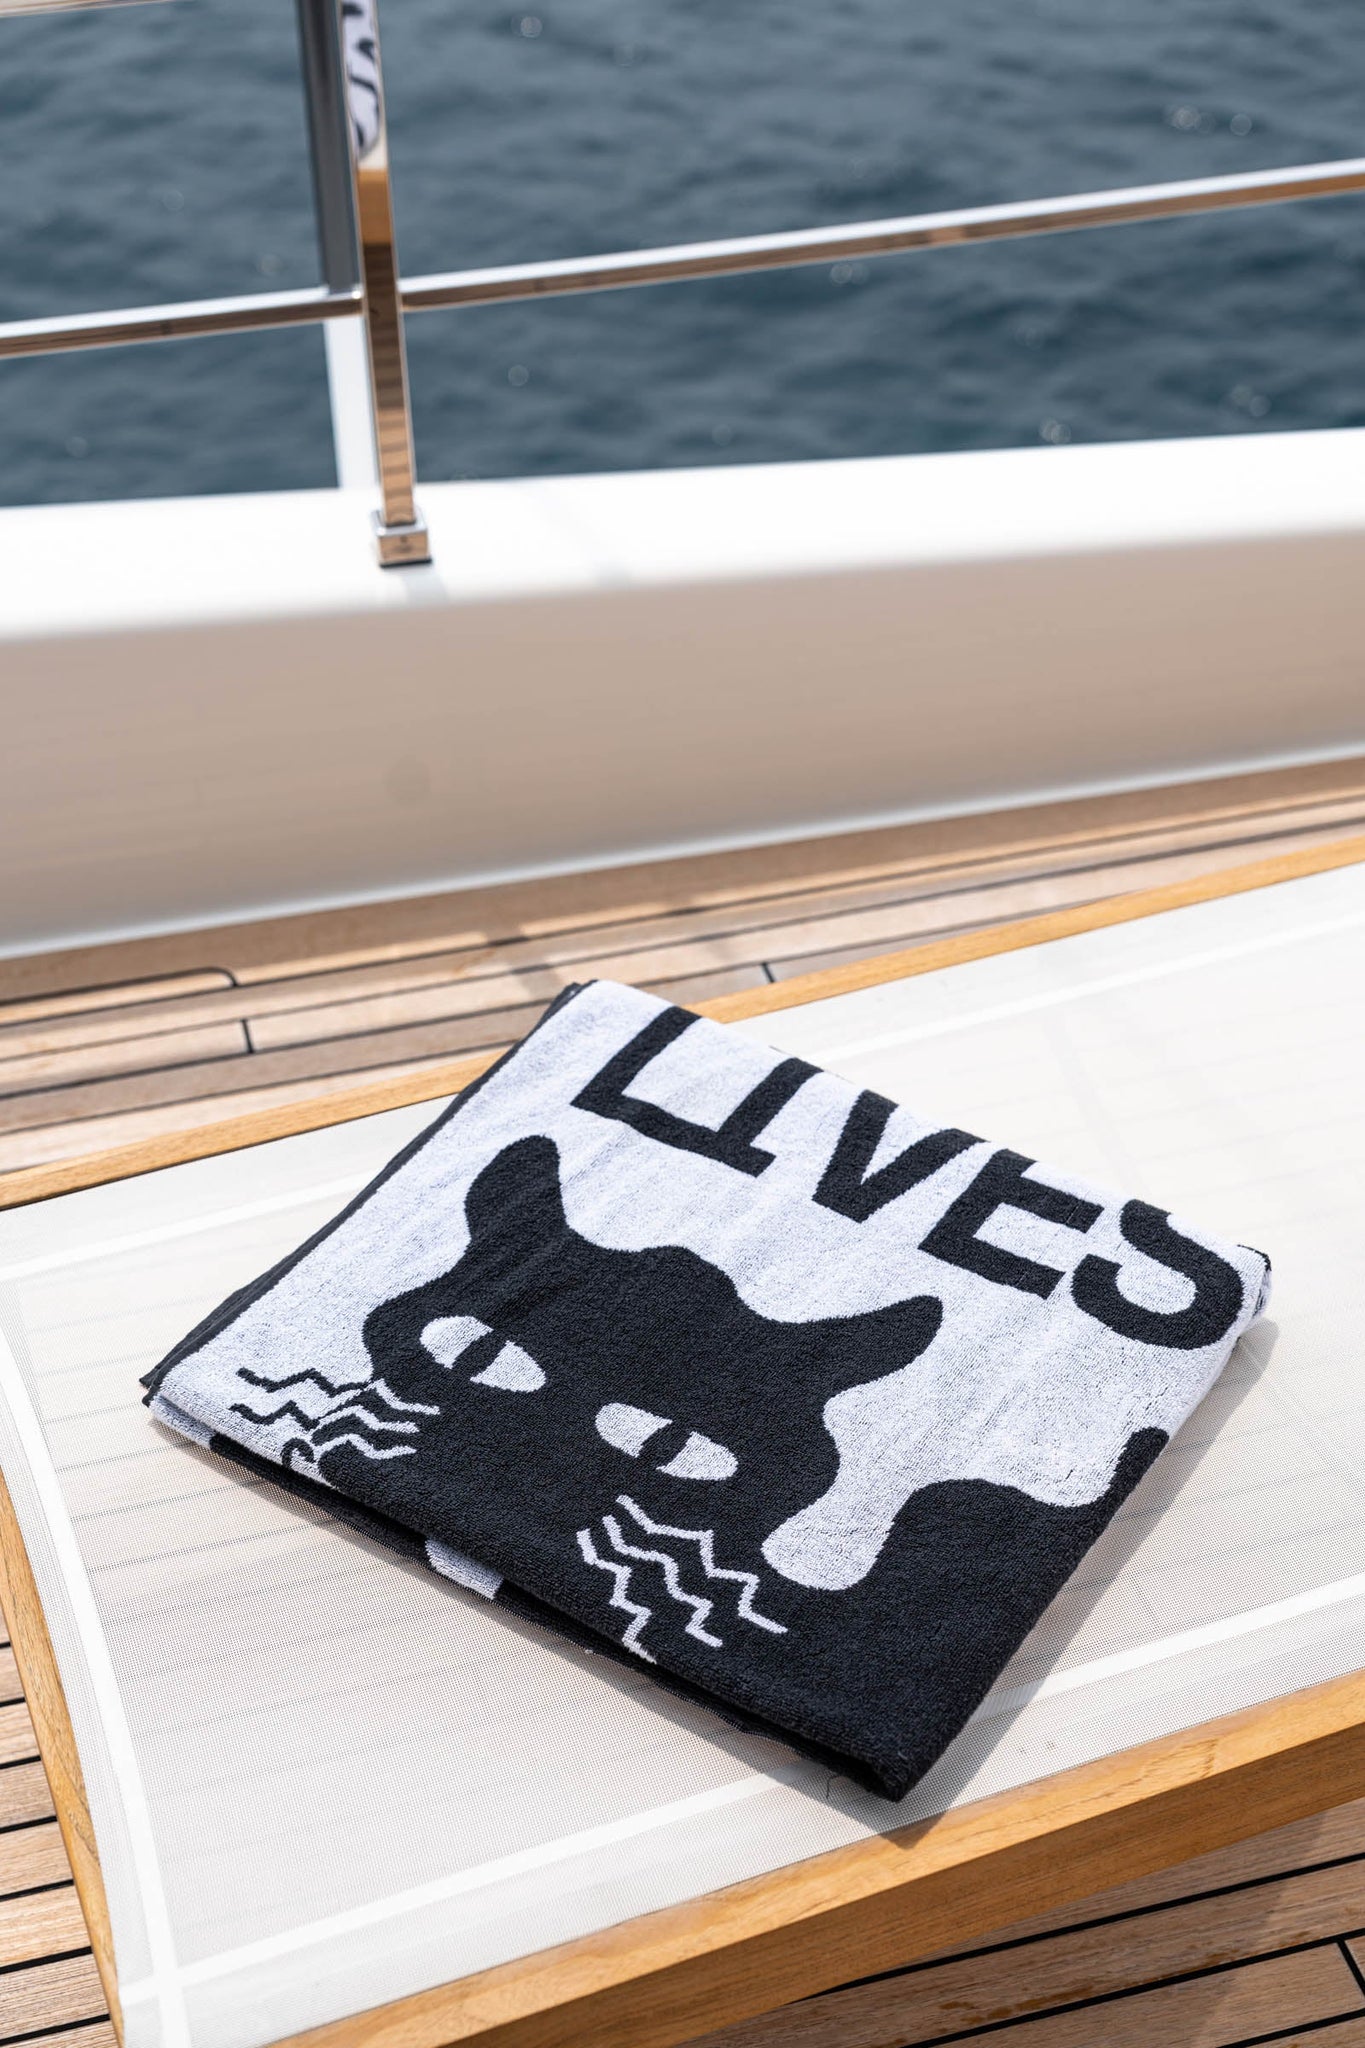 Alex khabbazi black and white cat nine lives beach towel